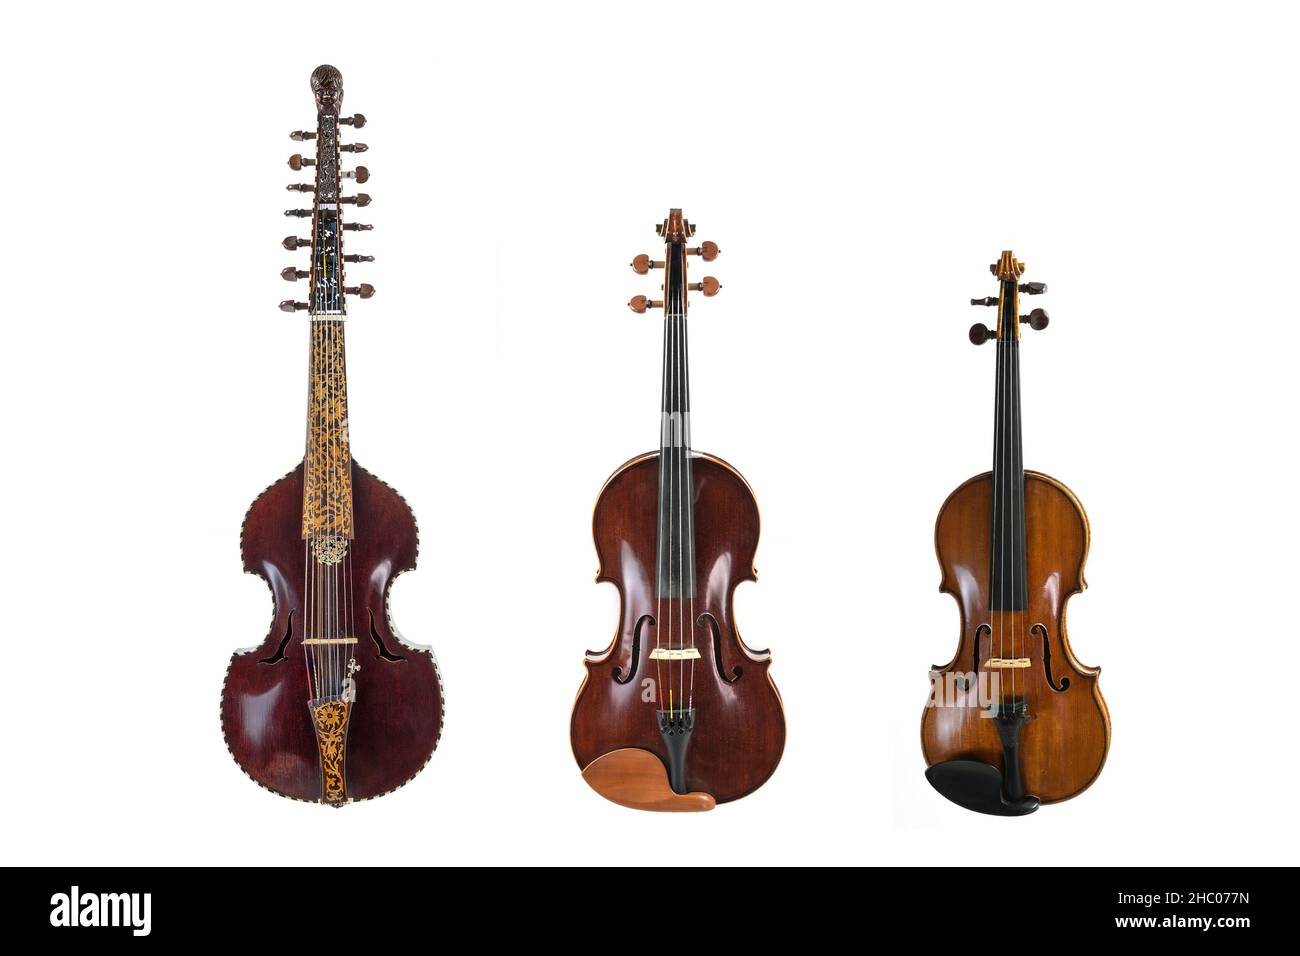 Tre strumenti musicali a corda della famiglia dei violi in confronto, viola d amore, viola e violino, isolati su sfondo bianco, spazio di copia Foto Stock